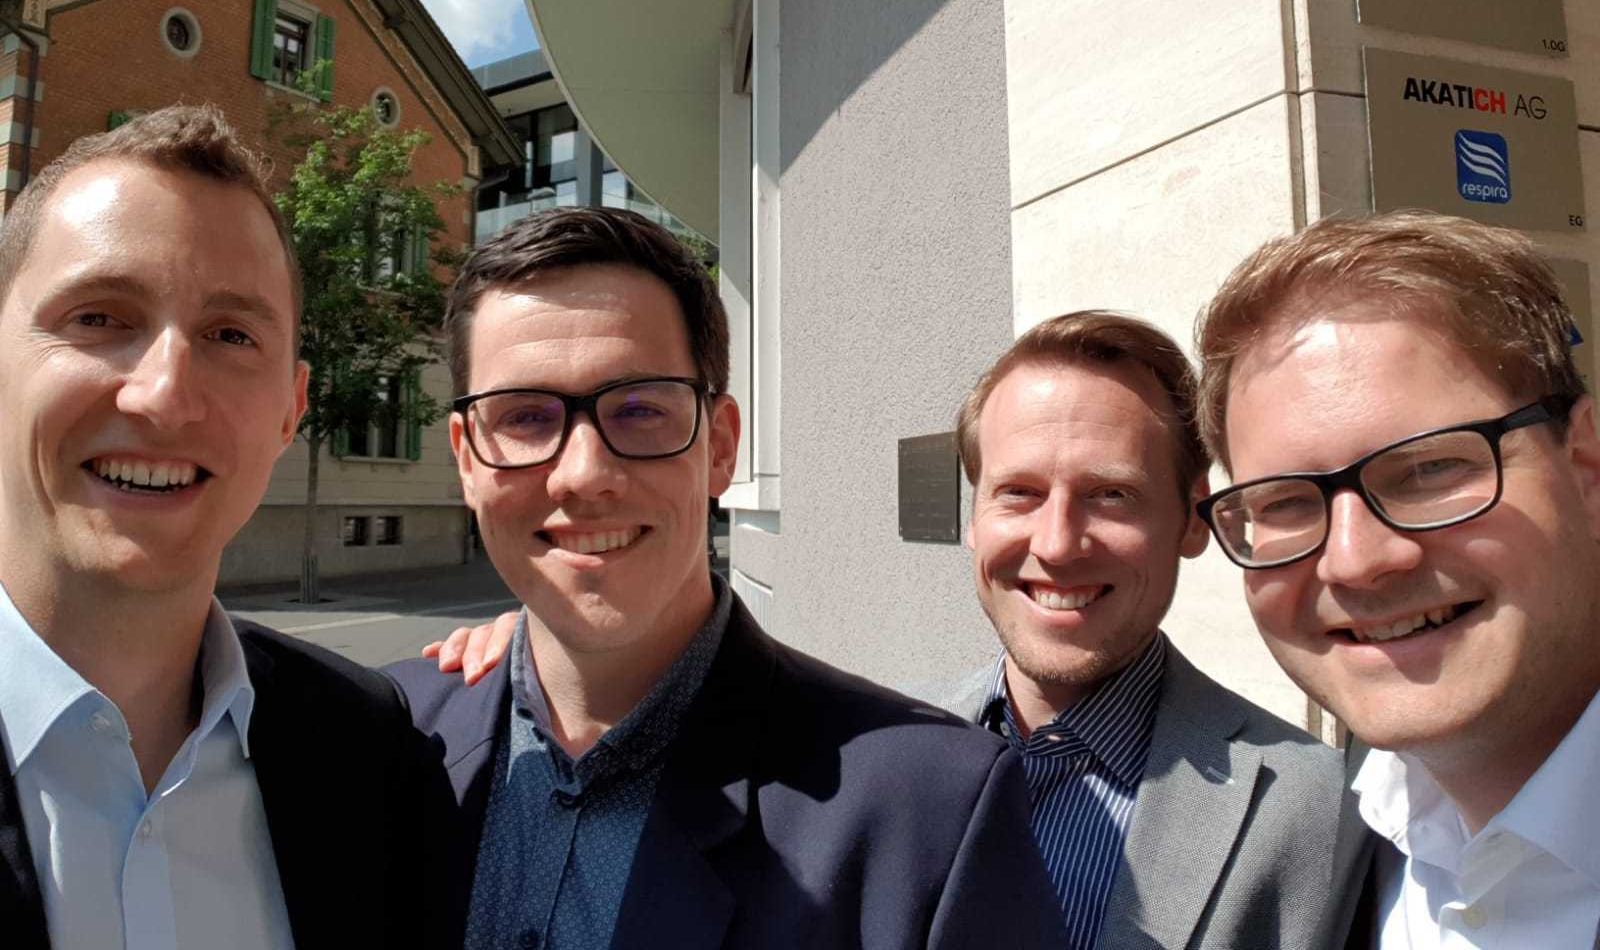 he founding members of i2 invest (from left to right): Marco Müller, Gregor Stadelmann, Markus Benz, Dominik Hertig